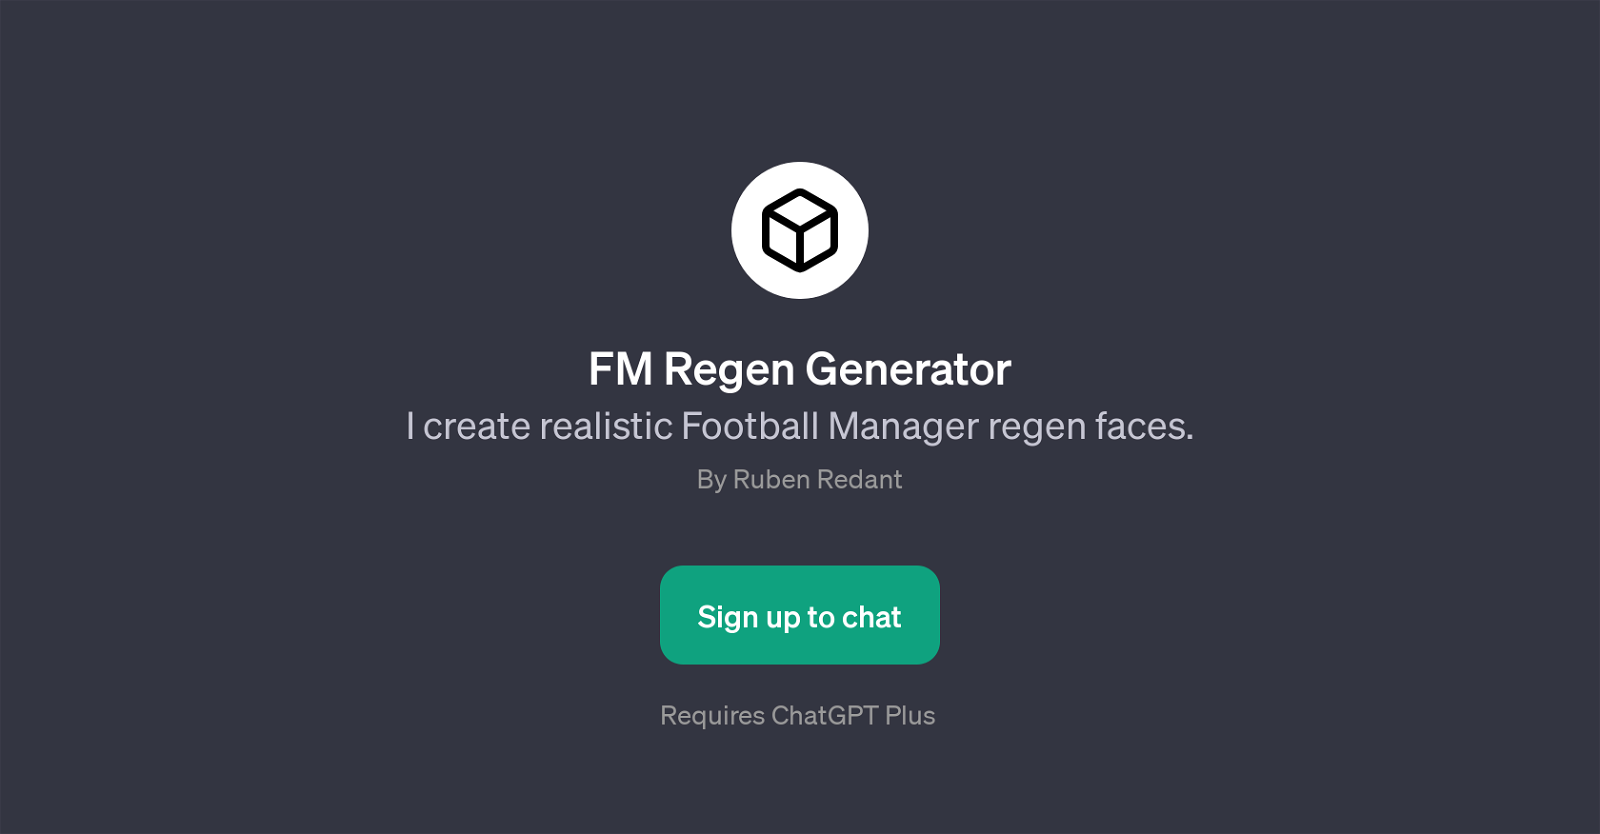 FM Regen Generator website